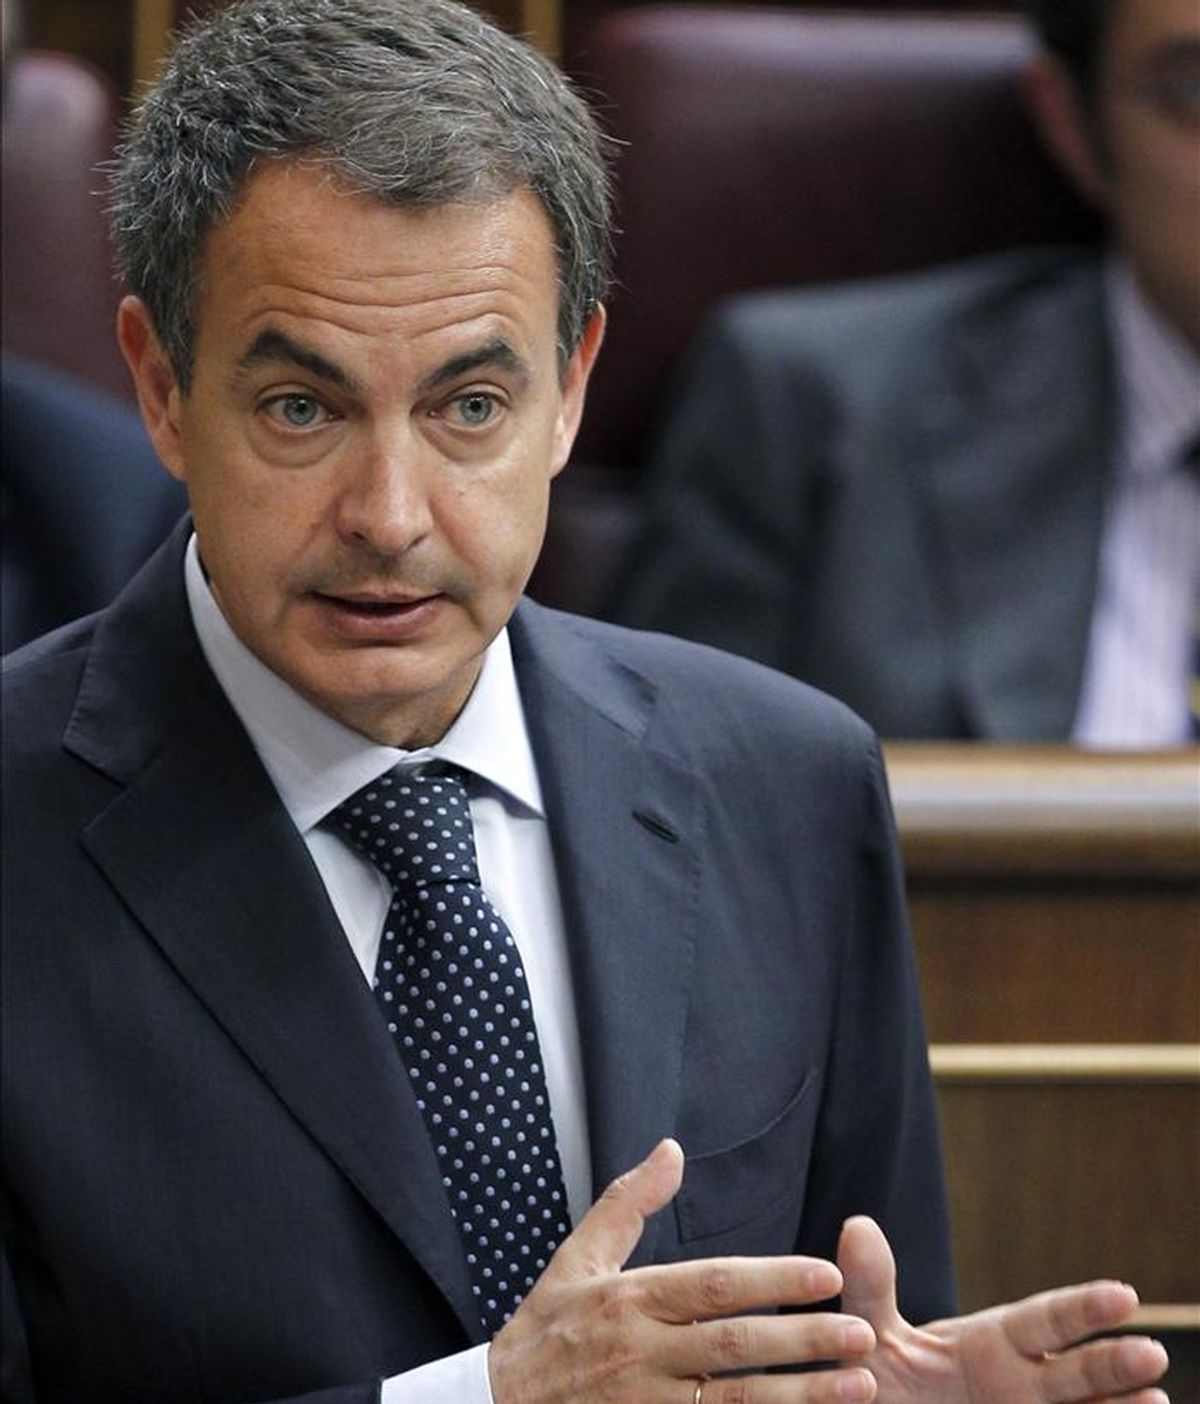 El presidente del Gobierno, José Luis Rodríguez Zapatero, ayer en una de sus intervenciones durante la sesión de control al Ejecutivo del pleno del Congreso. EFE